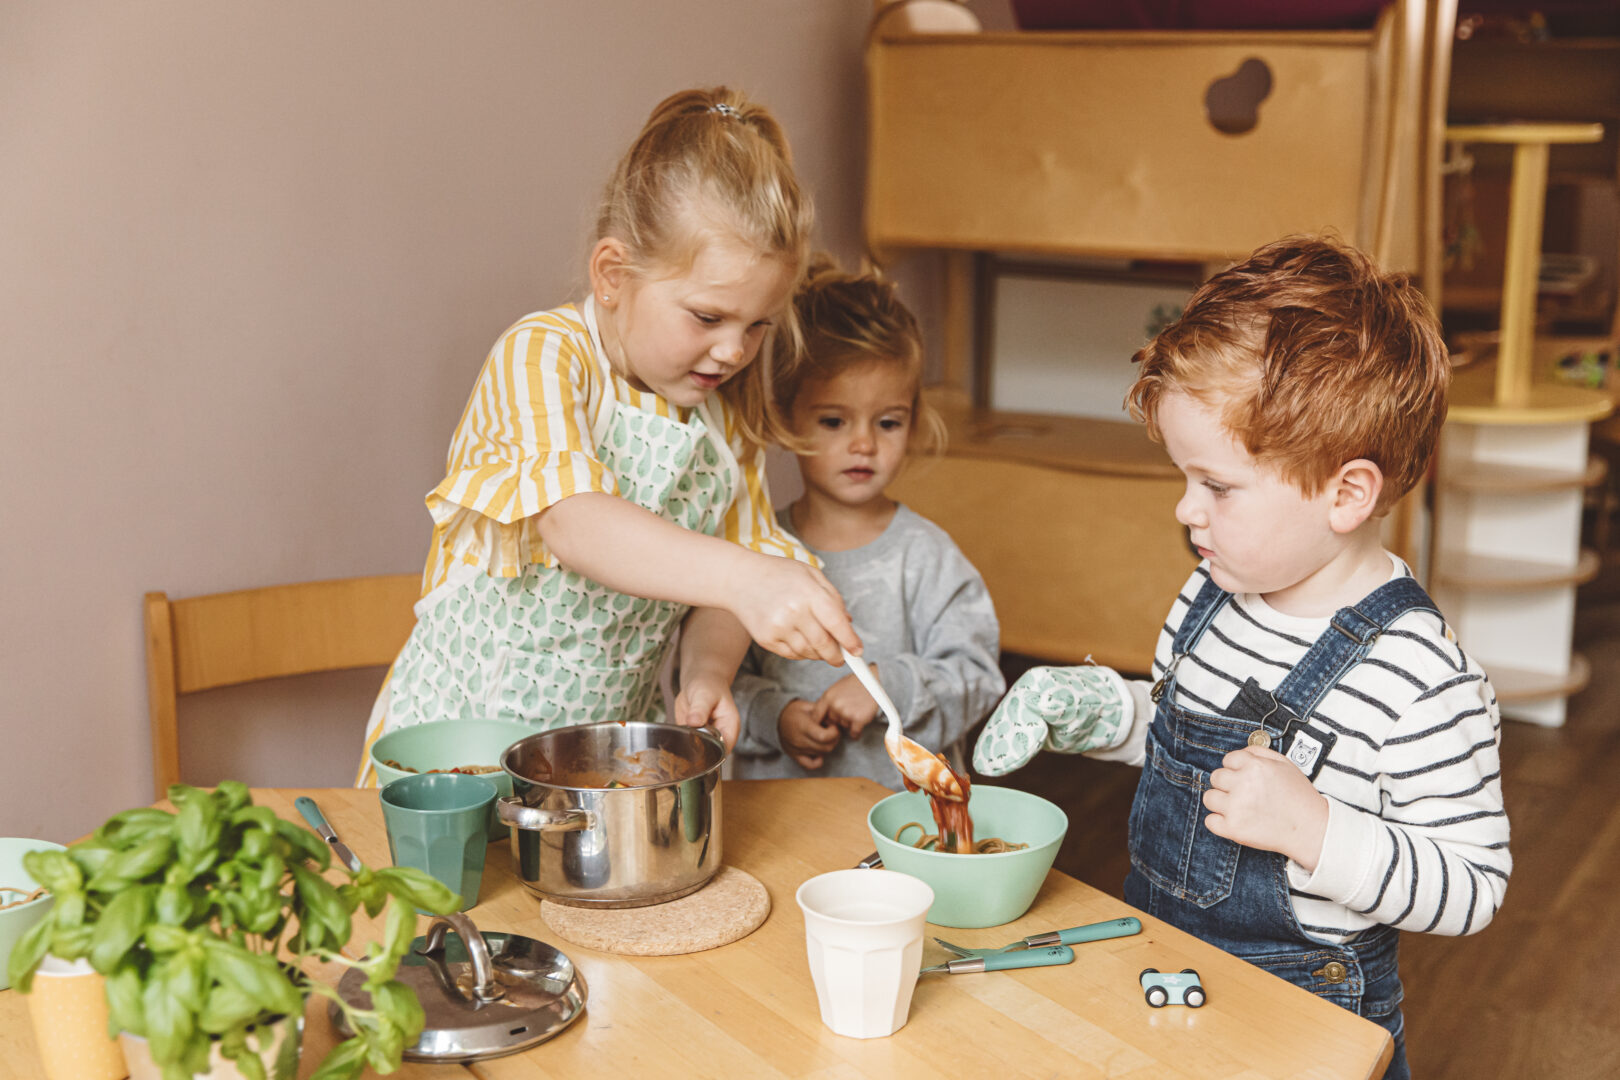 Drie jonge kinderen zijn samen aan het koken aan een houten tafel; het meisje in de gestreepte jurk serveert iets uit een pot terwijl het andere meisje en de jongen in de tuinbroek toekijken. Op tafel staan keukengerei en een plant.